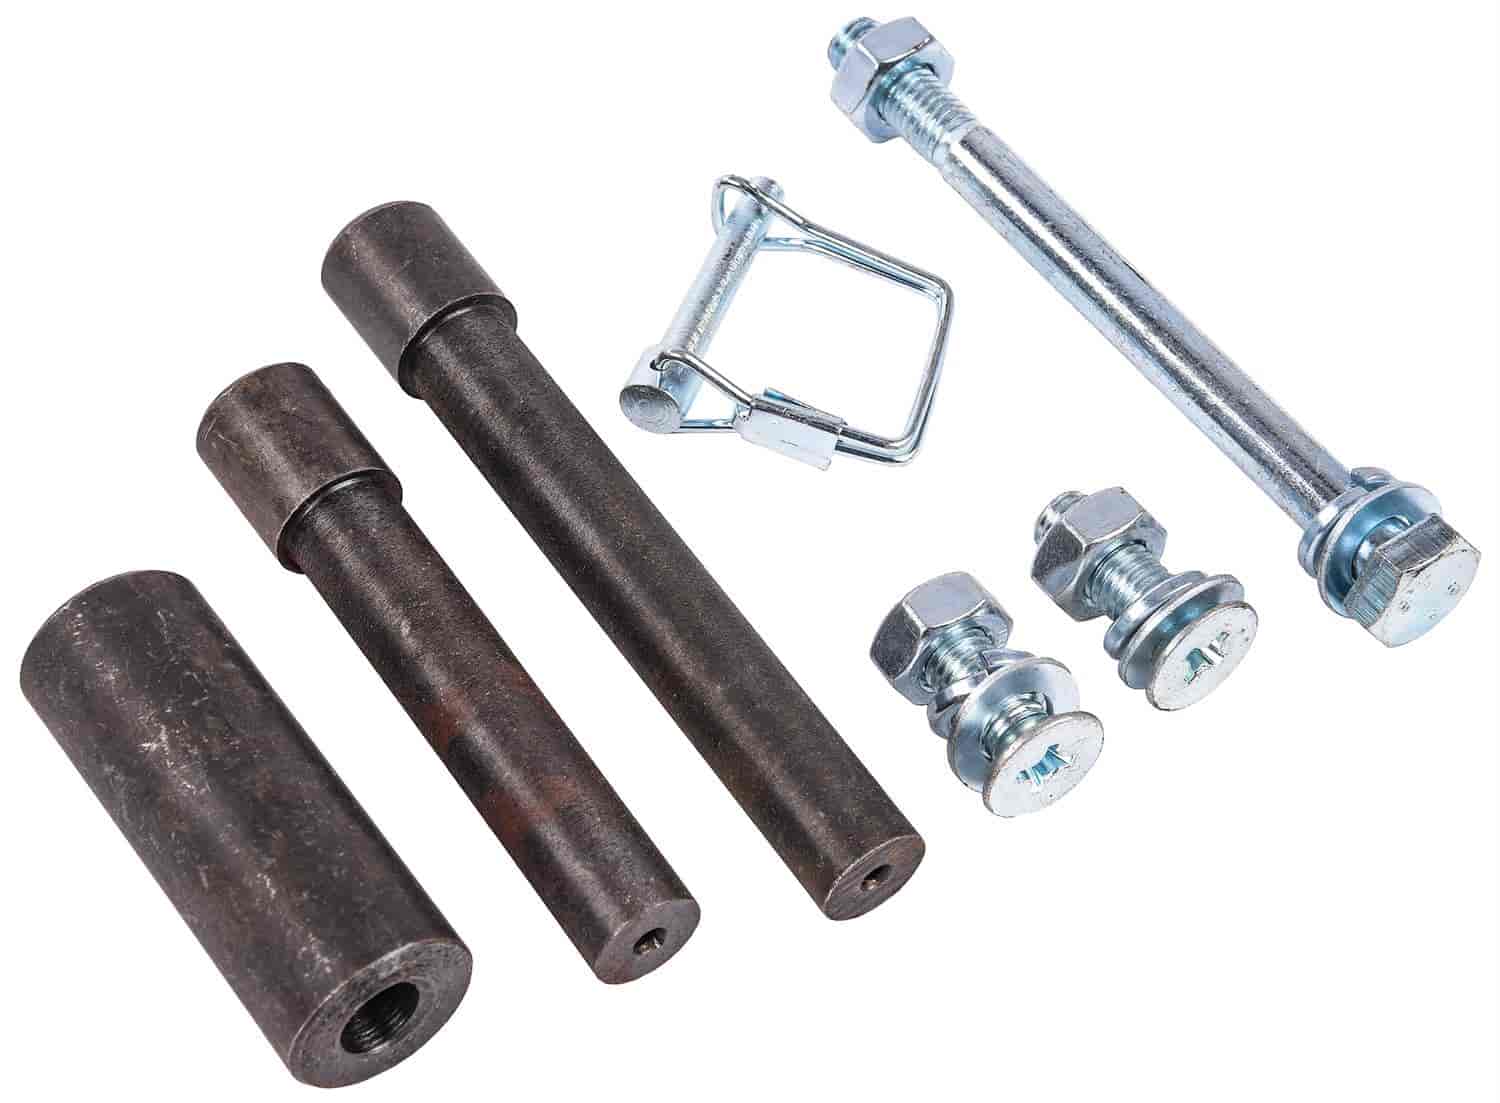 Replacement Hardware kit for Tubing Bender 555-81523